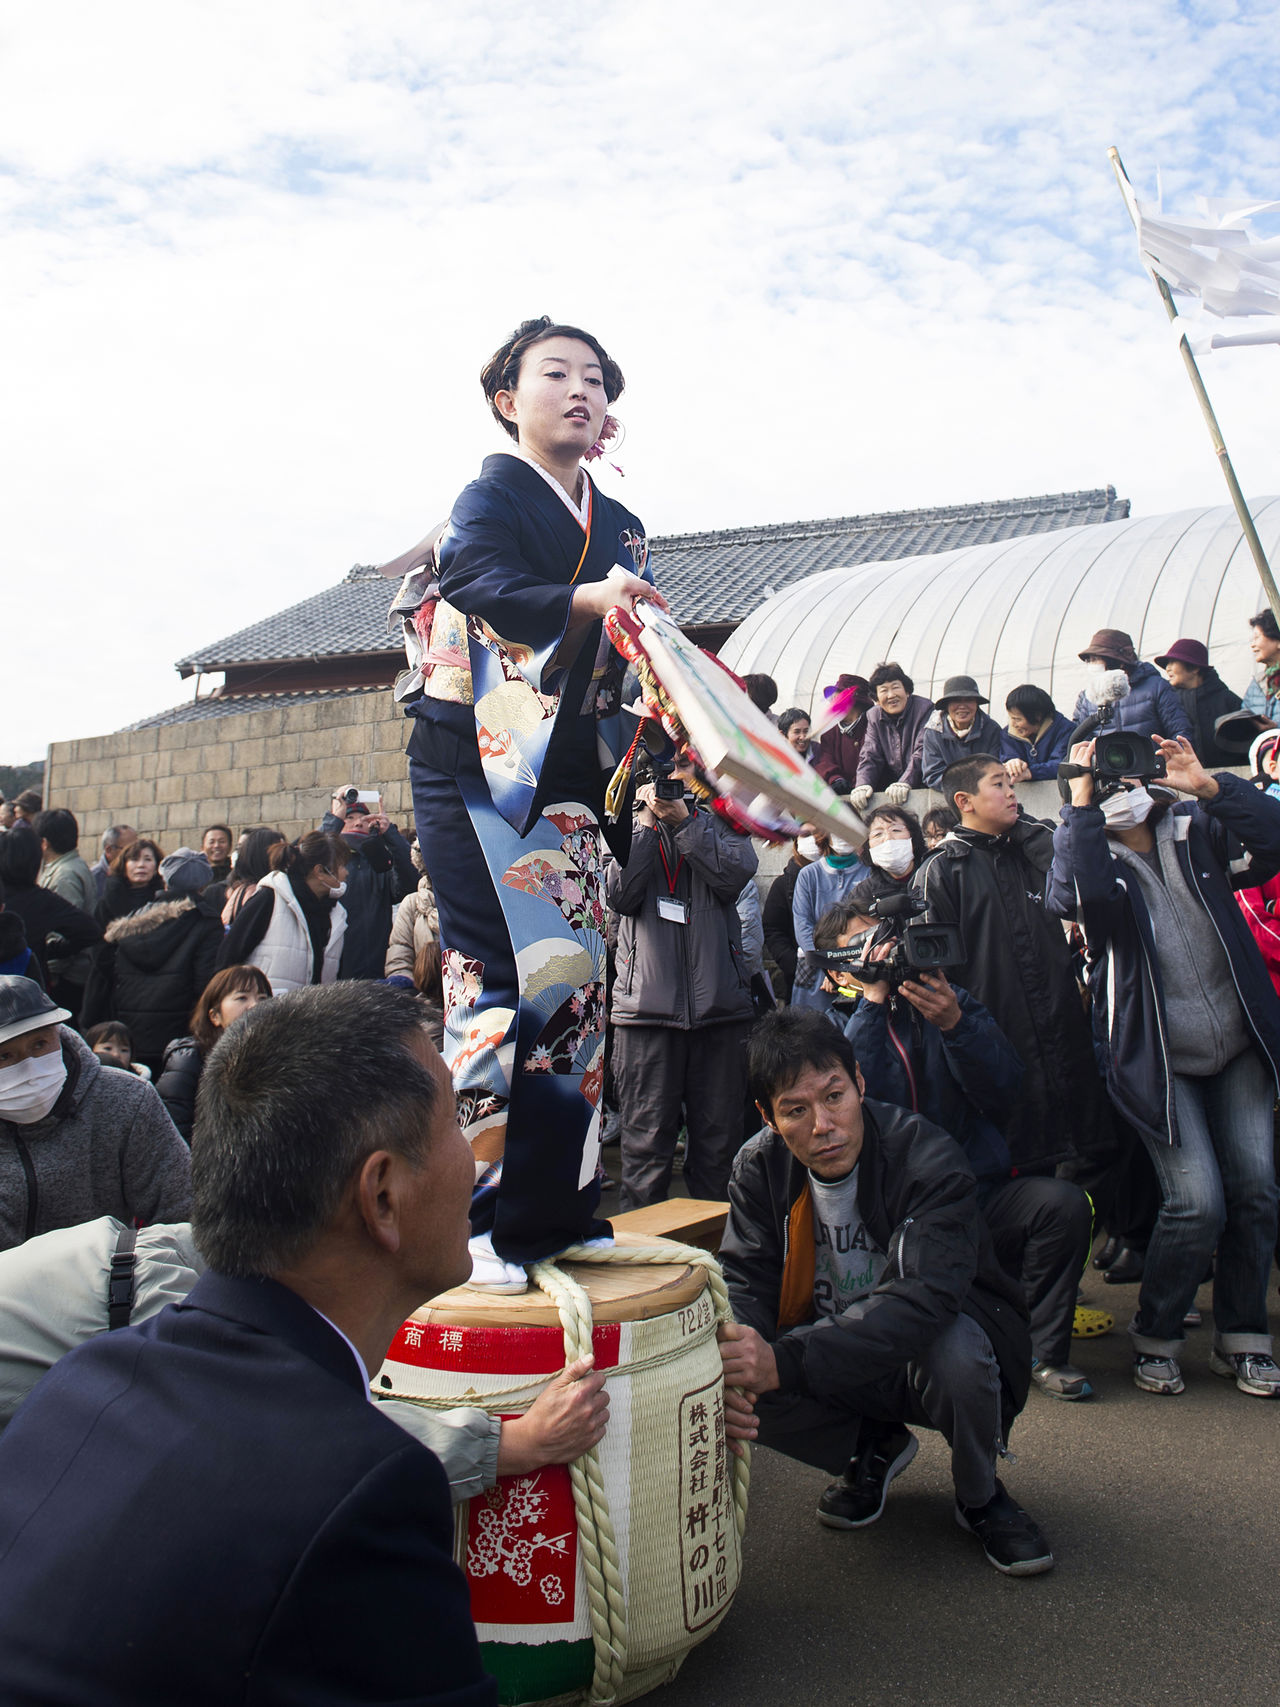 امرأة تقف على برميل للمشاركة في لعبة المضارب والريشة. مشاهد غريبة مثل هذه موجودة في كل مكان في مهرجان هيتوماتو.